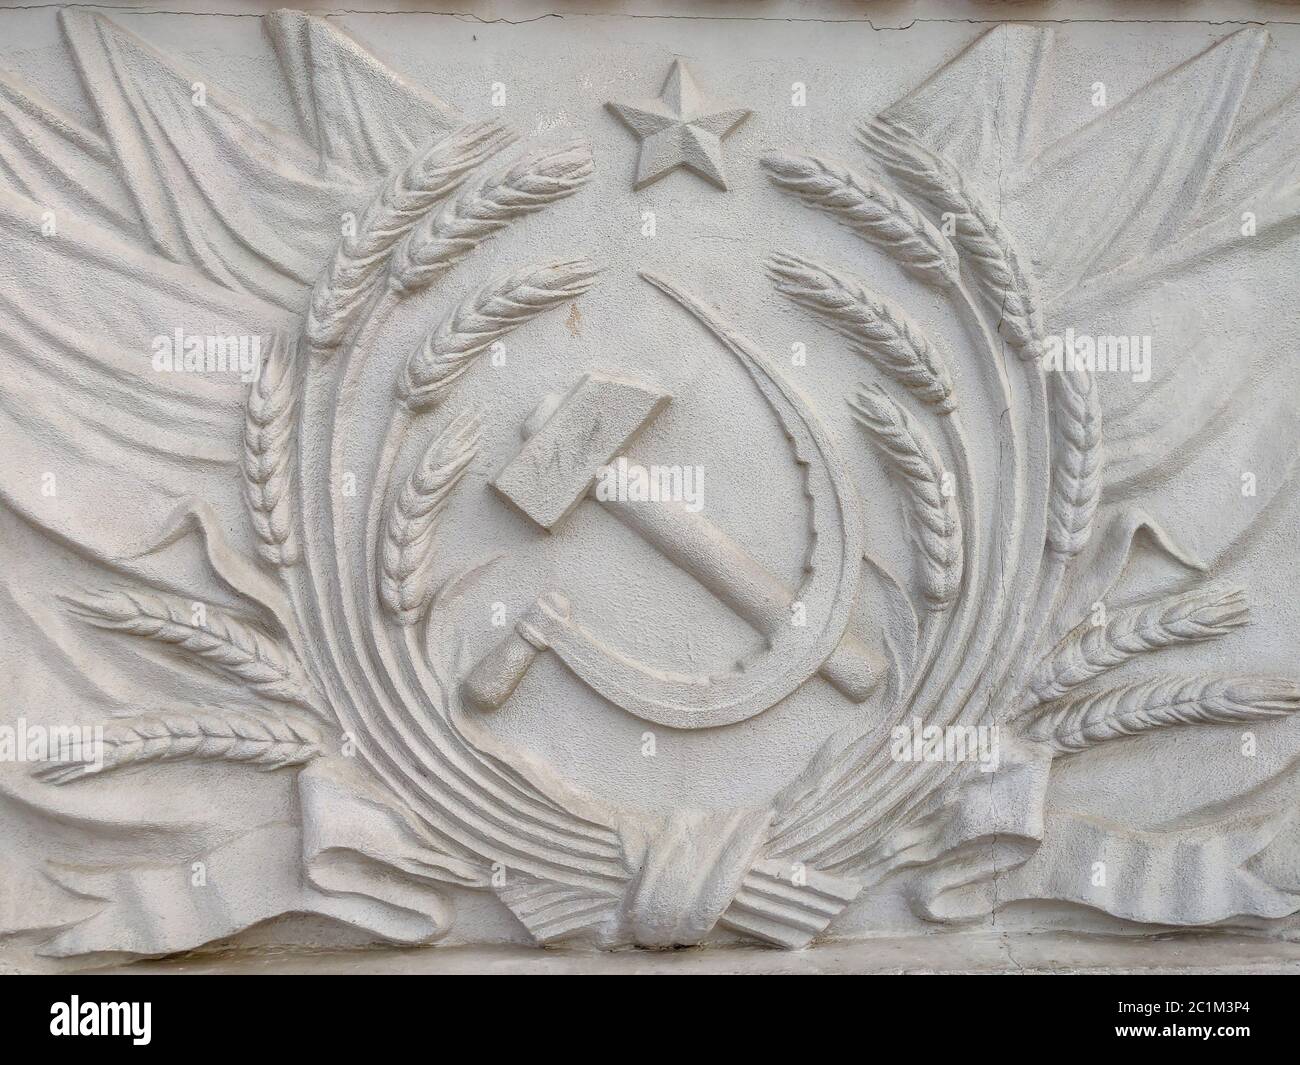 Bas-Relief mit Hammer und Sichel des Staatswappens der UdSSR Stockfoto